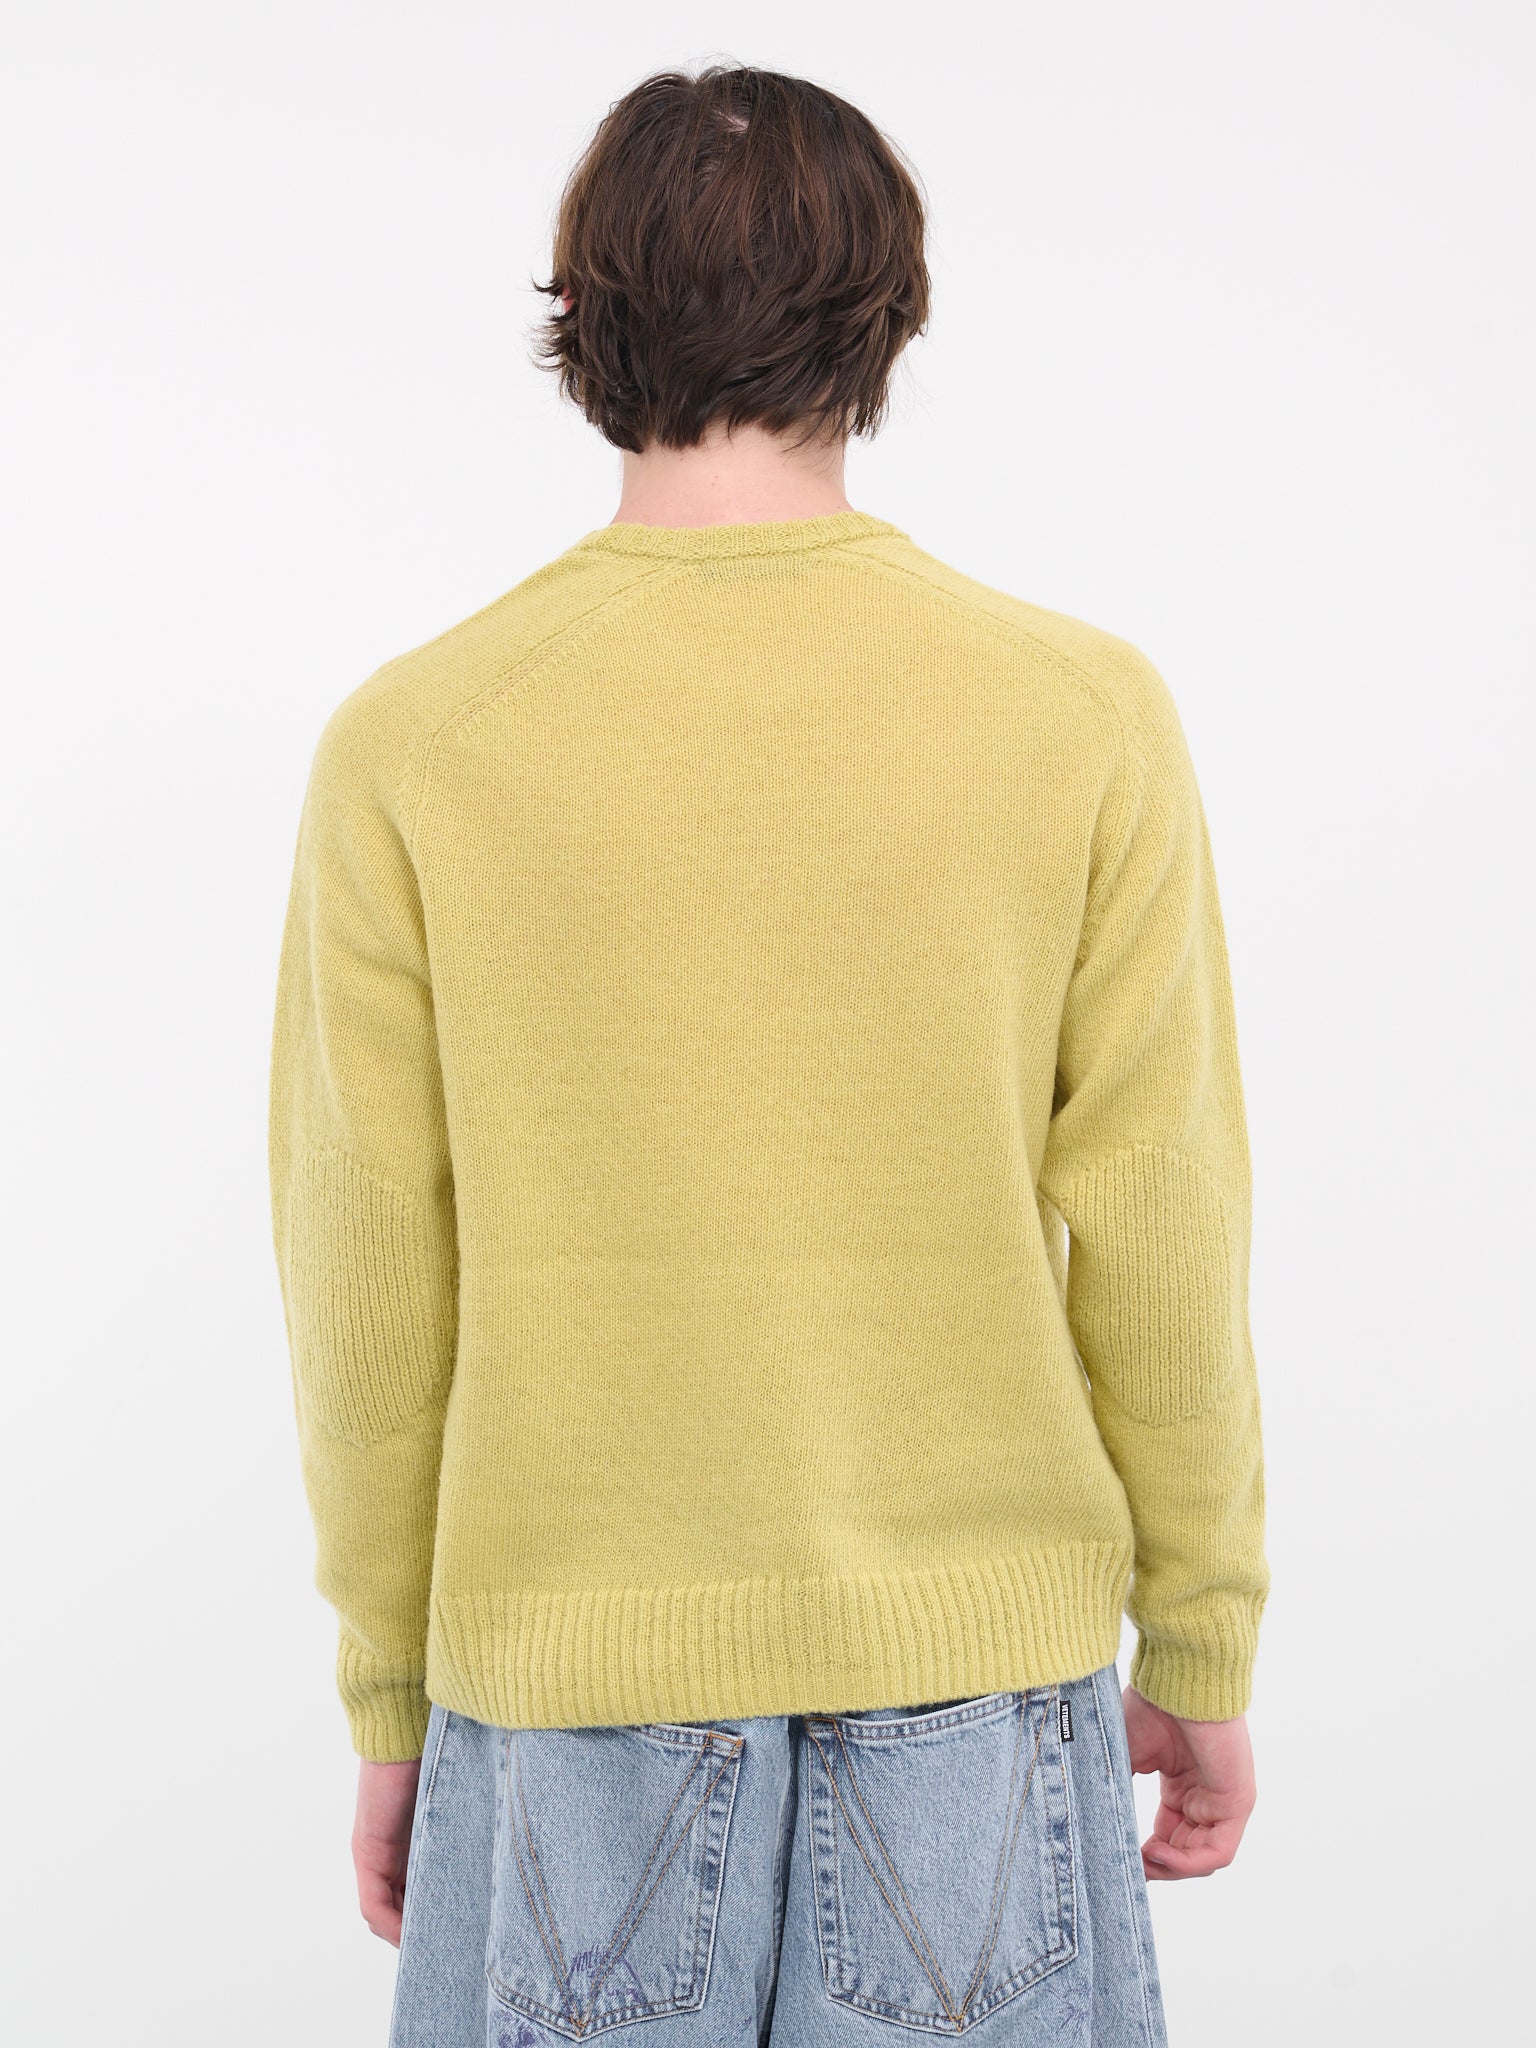 PVC Knit Sweater (UC2C4910-YELLOW)